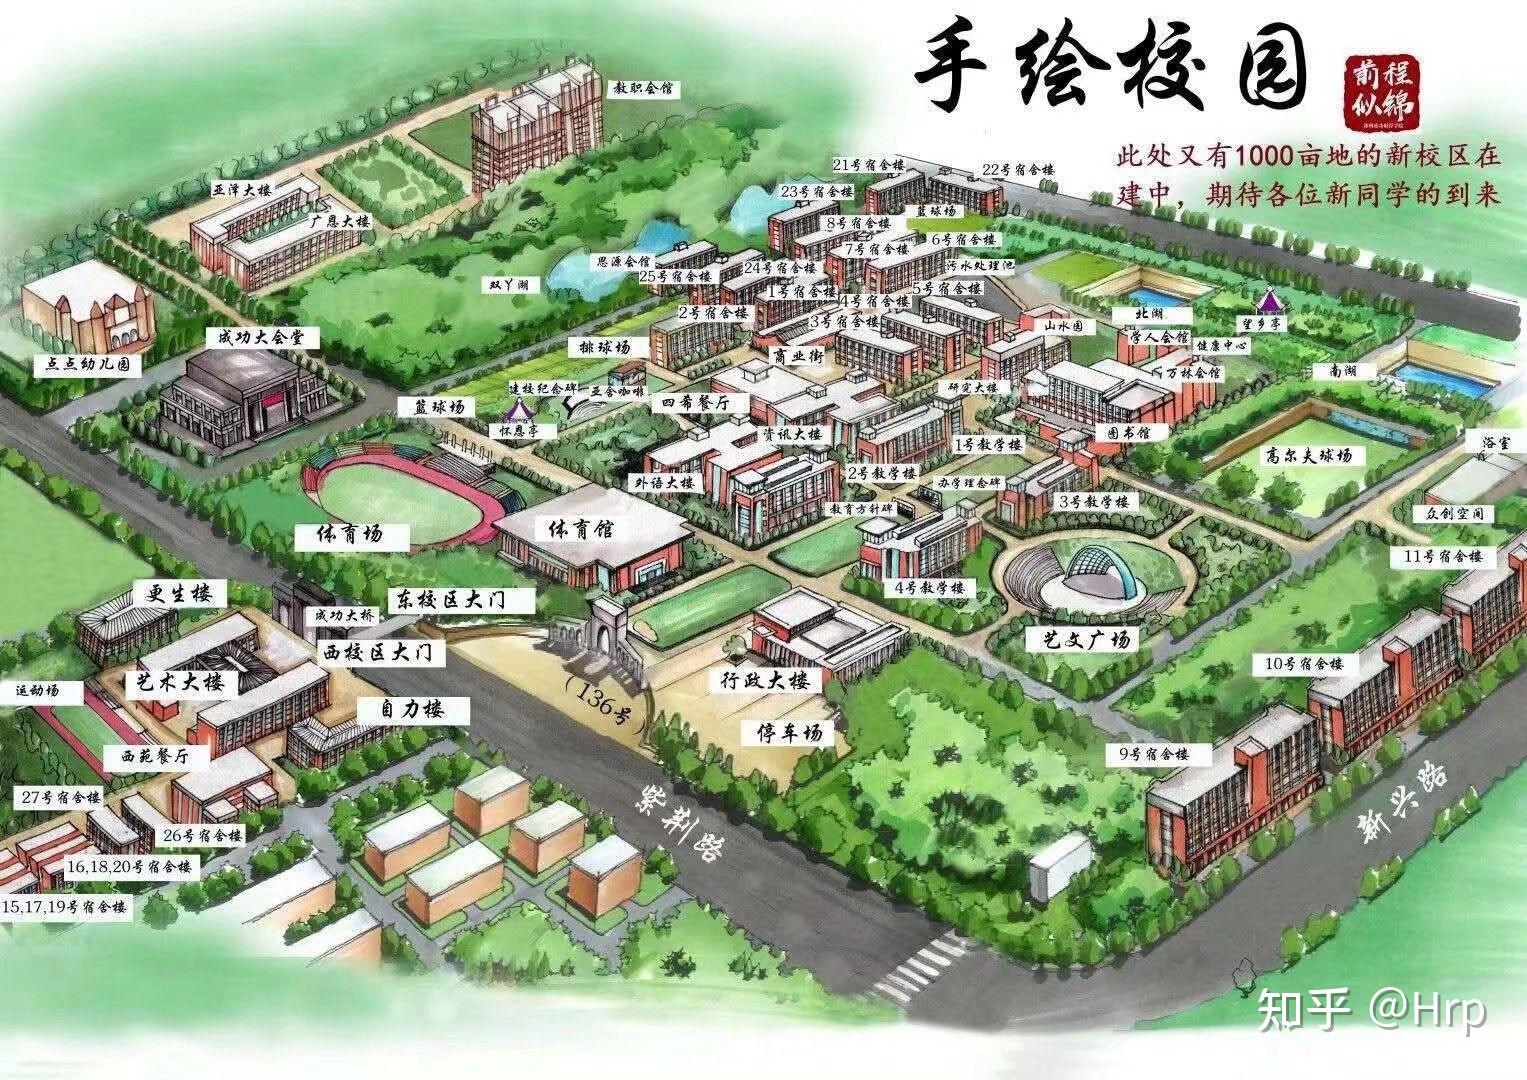 作为郑州商学院的前辈,你有哪些想对新入学的学弟学妹说的? 